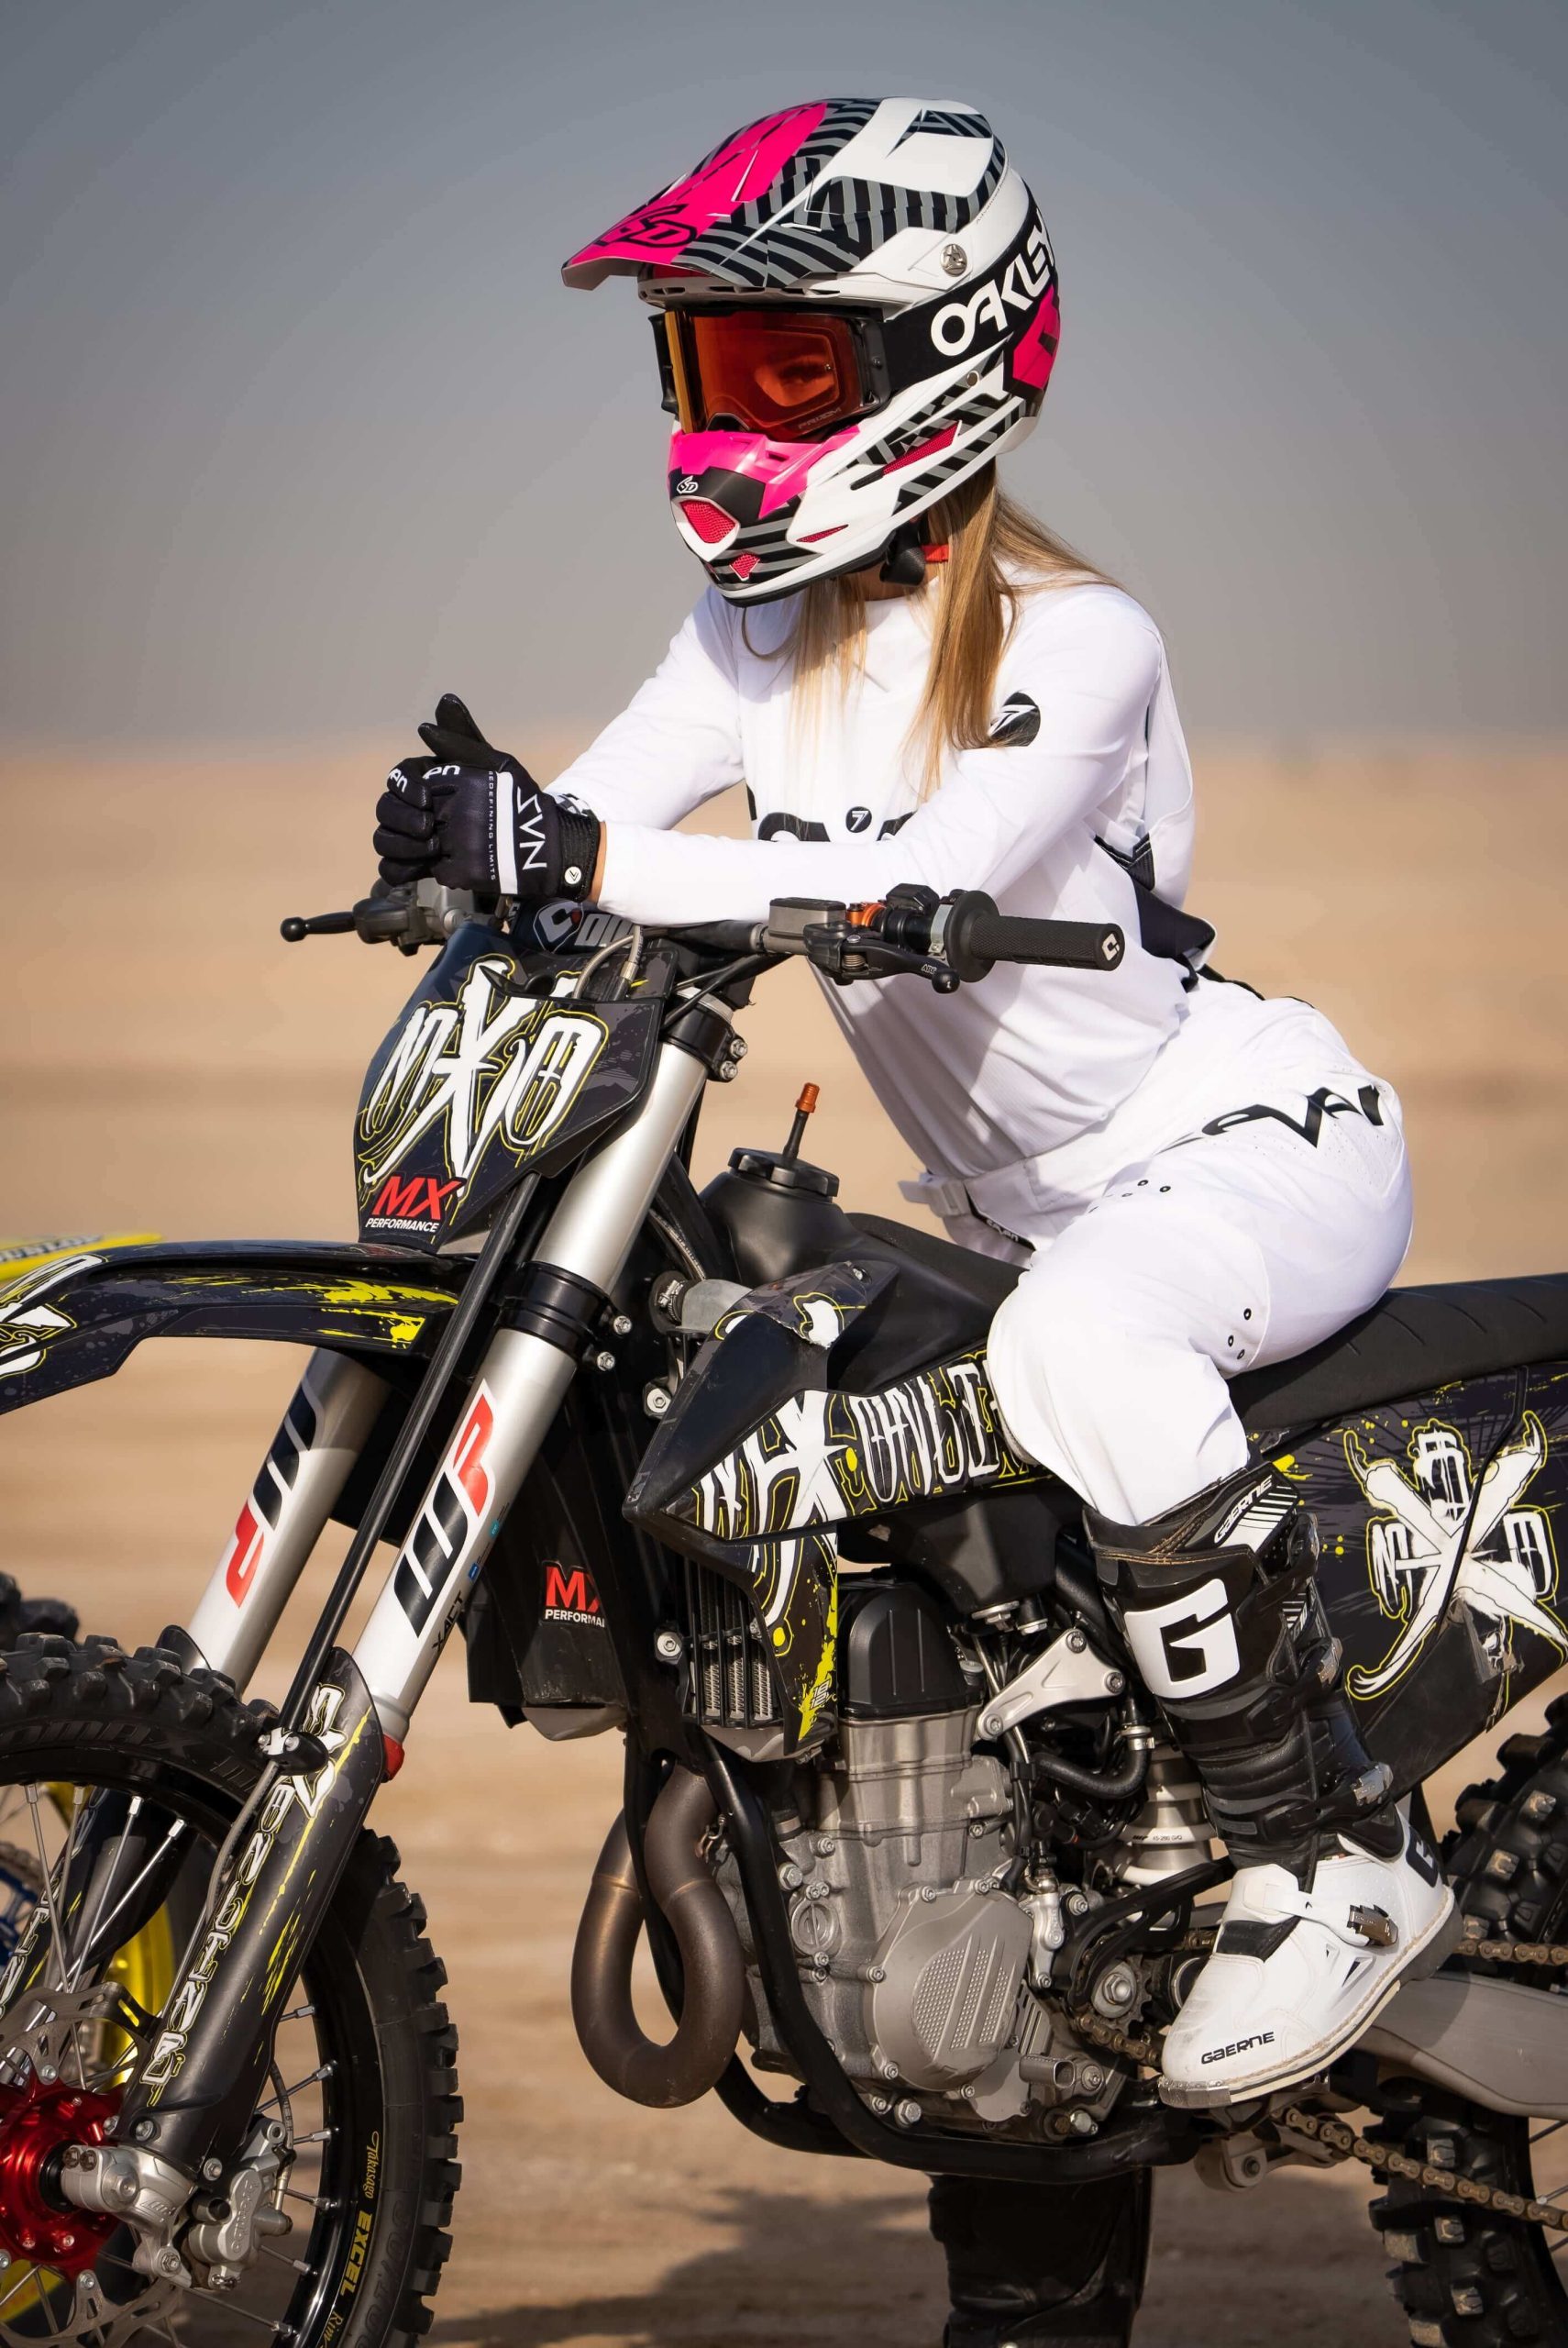 Motocross Shop Dubai Online Shop for Motocross Gear UAE Mx Online Motocross Store